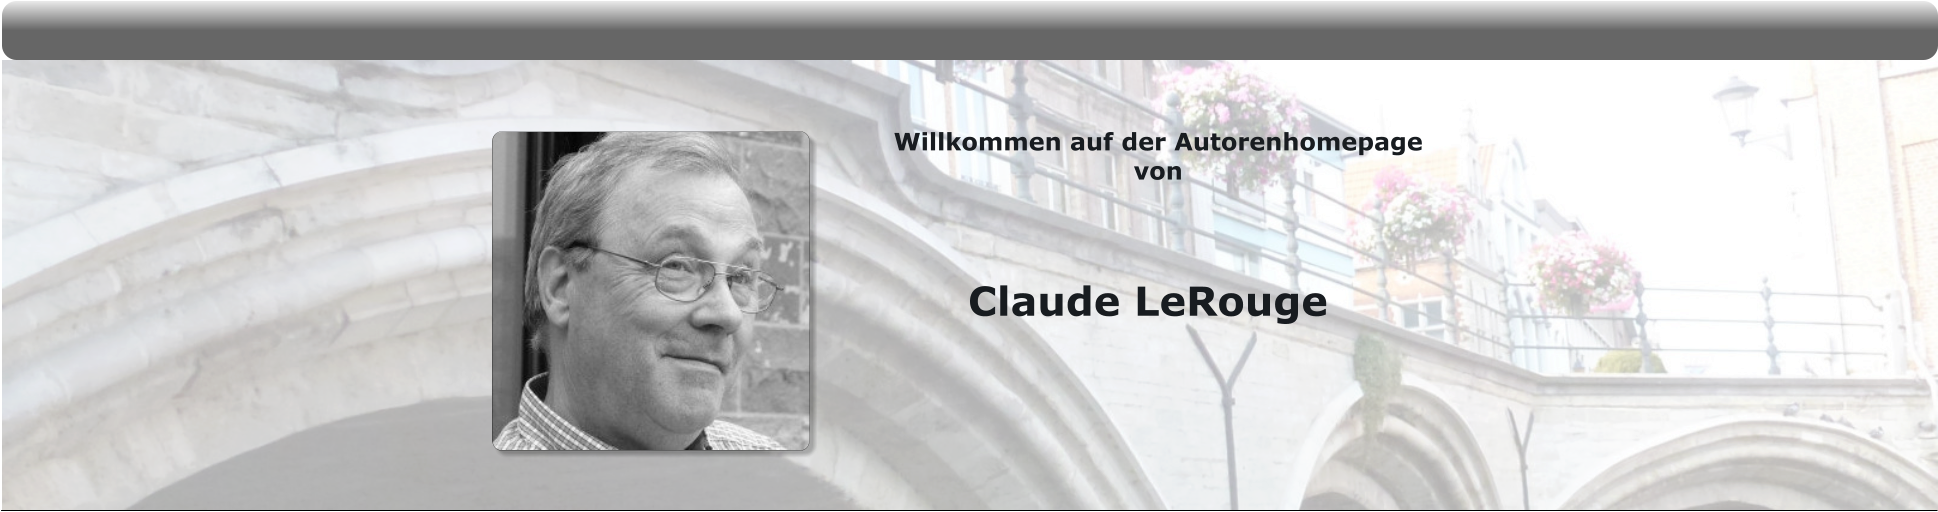 Claude LeRouge Willkommen auf der Autorenhomepage  von